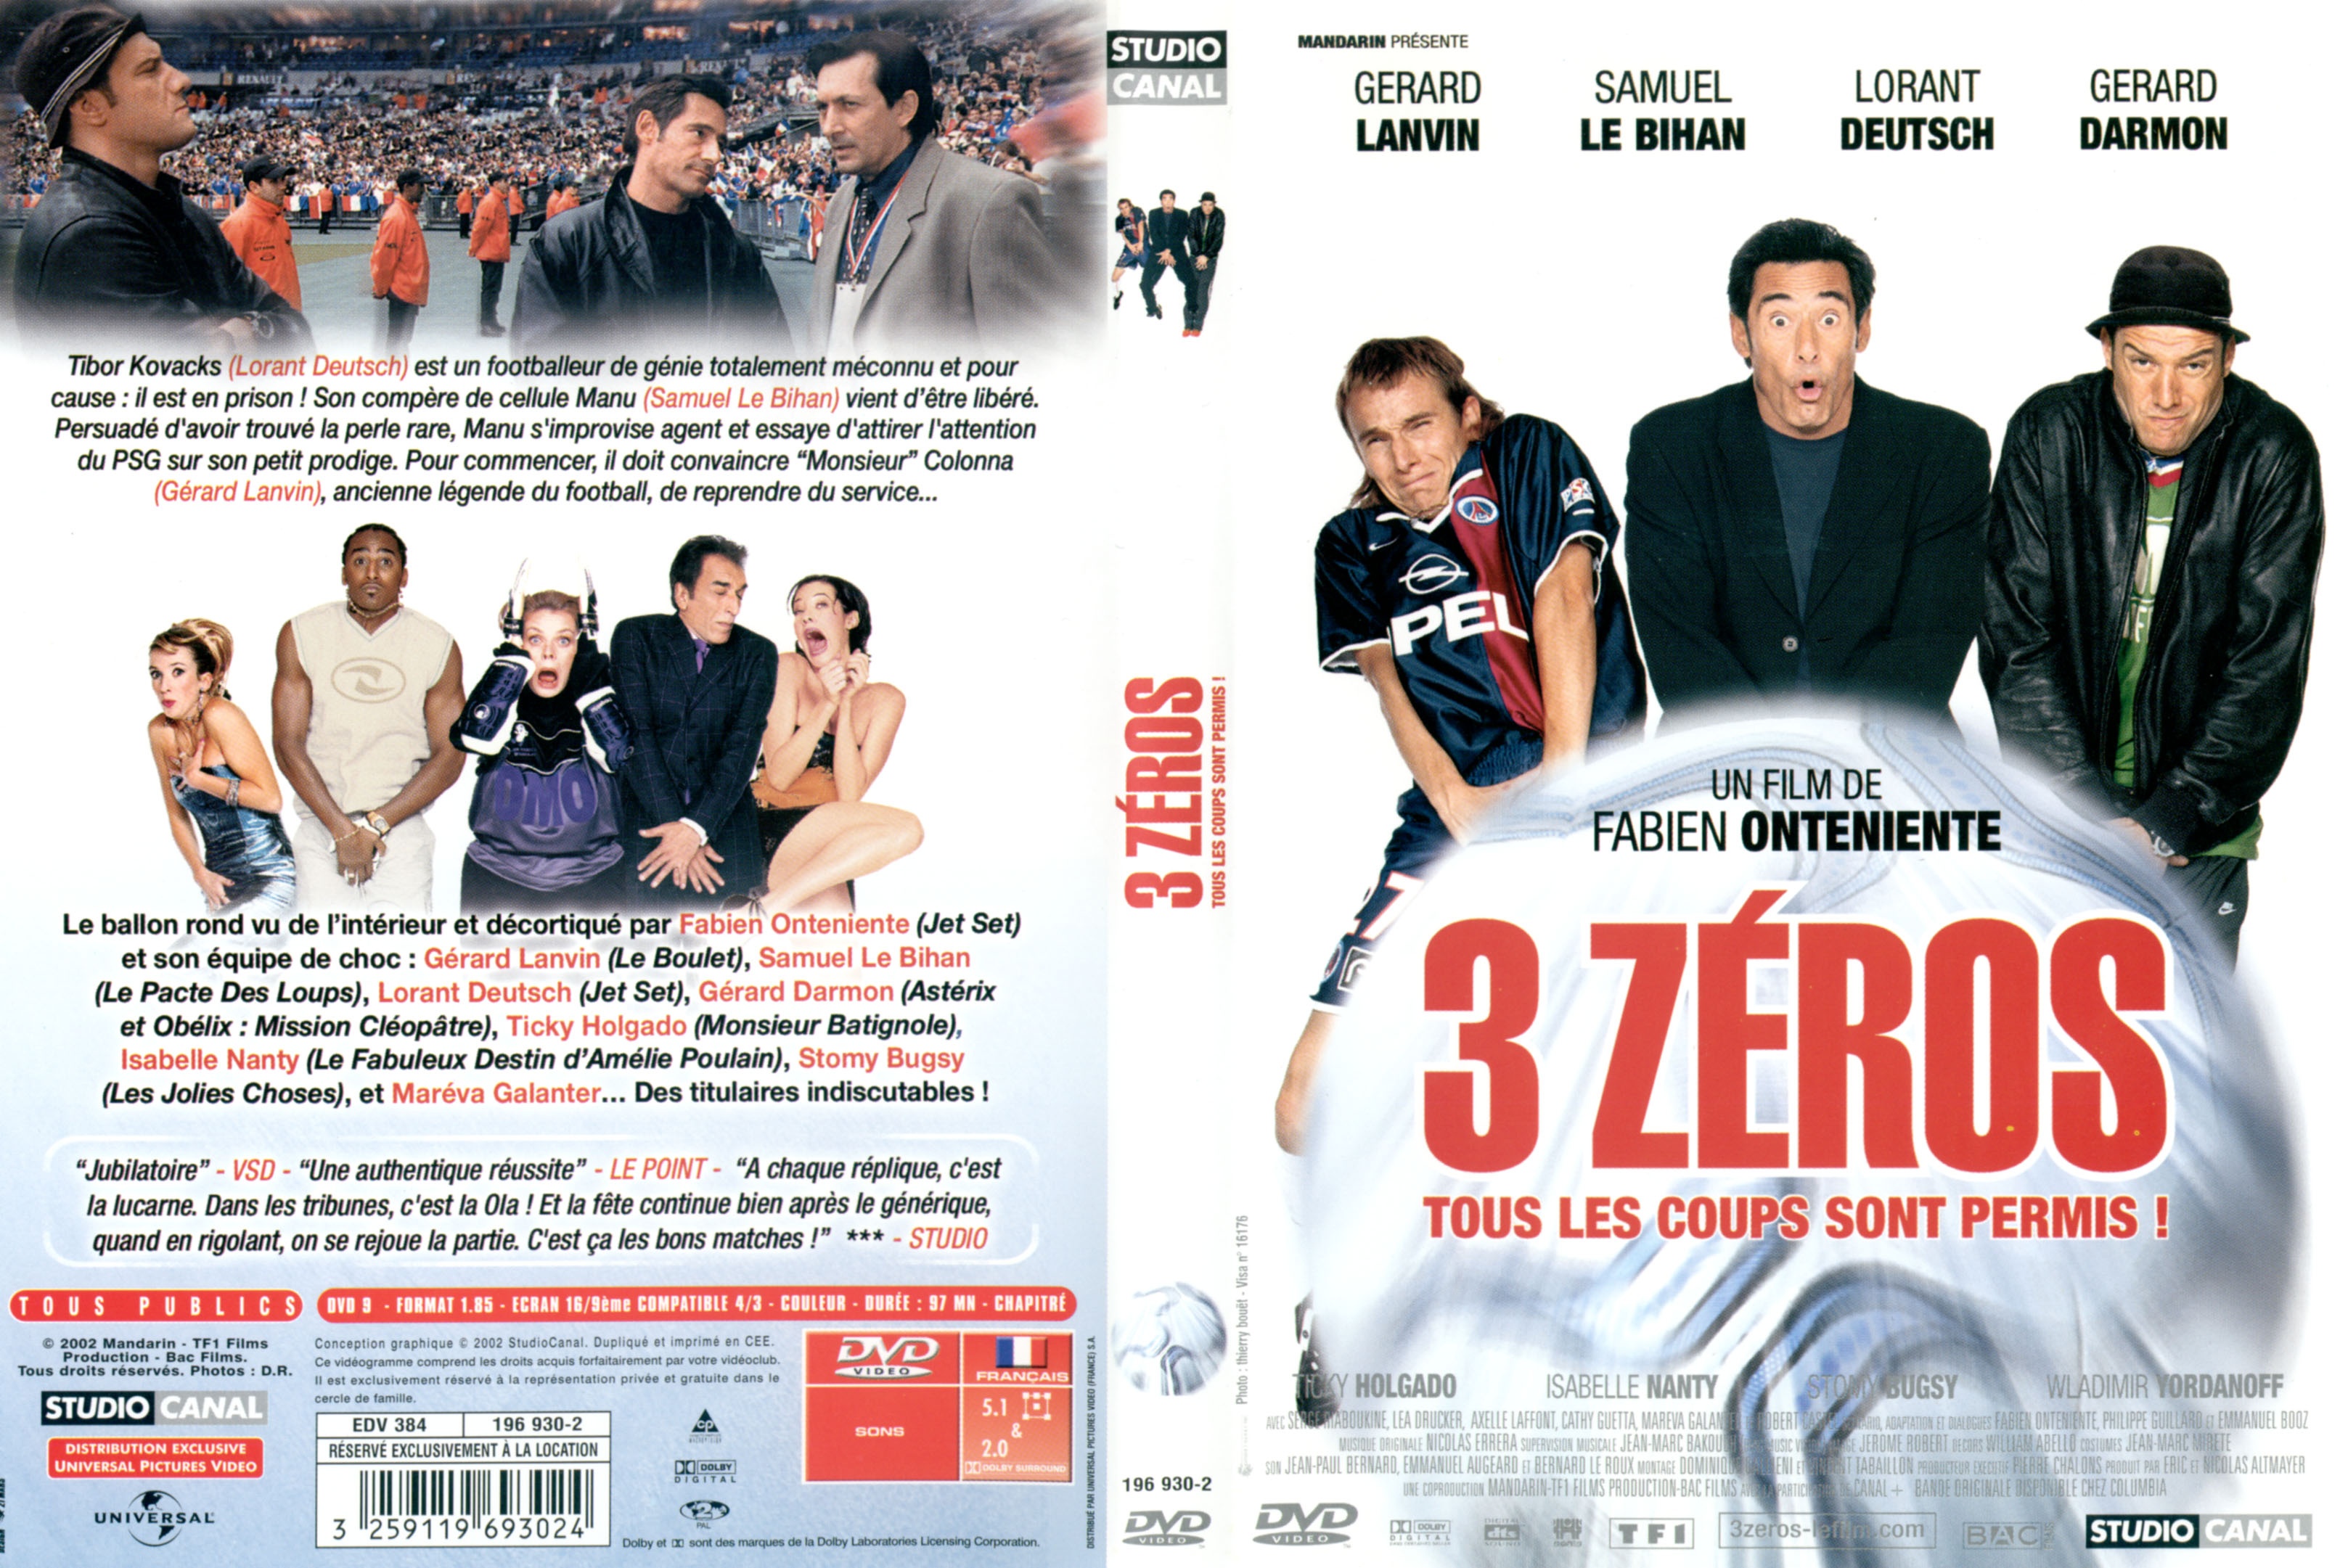 Jaquette DVD 3 zeros v2